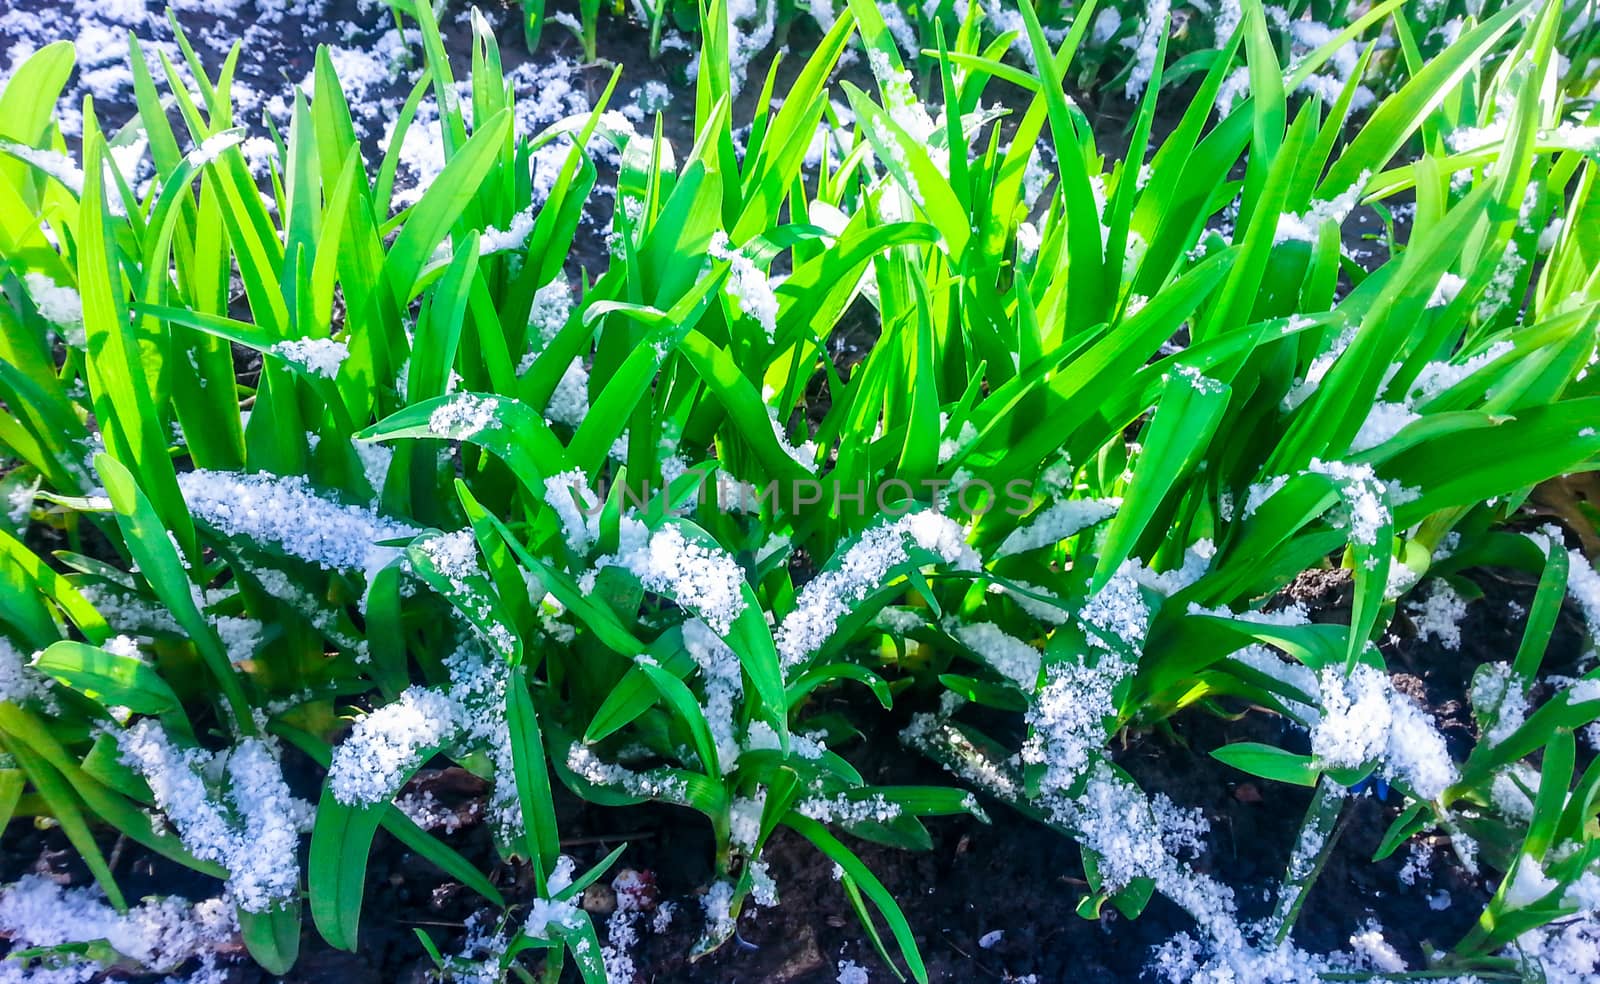 Snow on the green grass  by zeffss